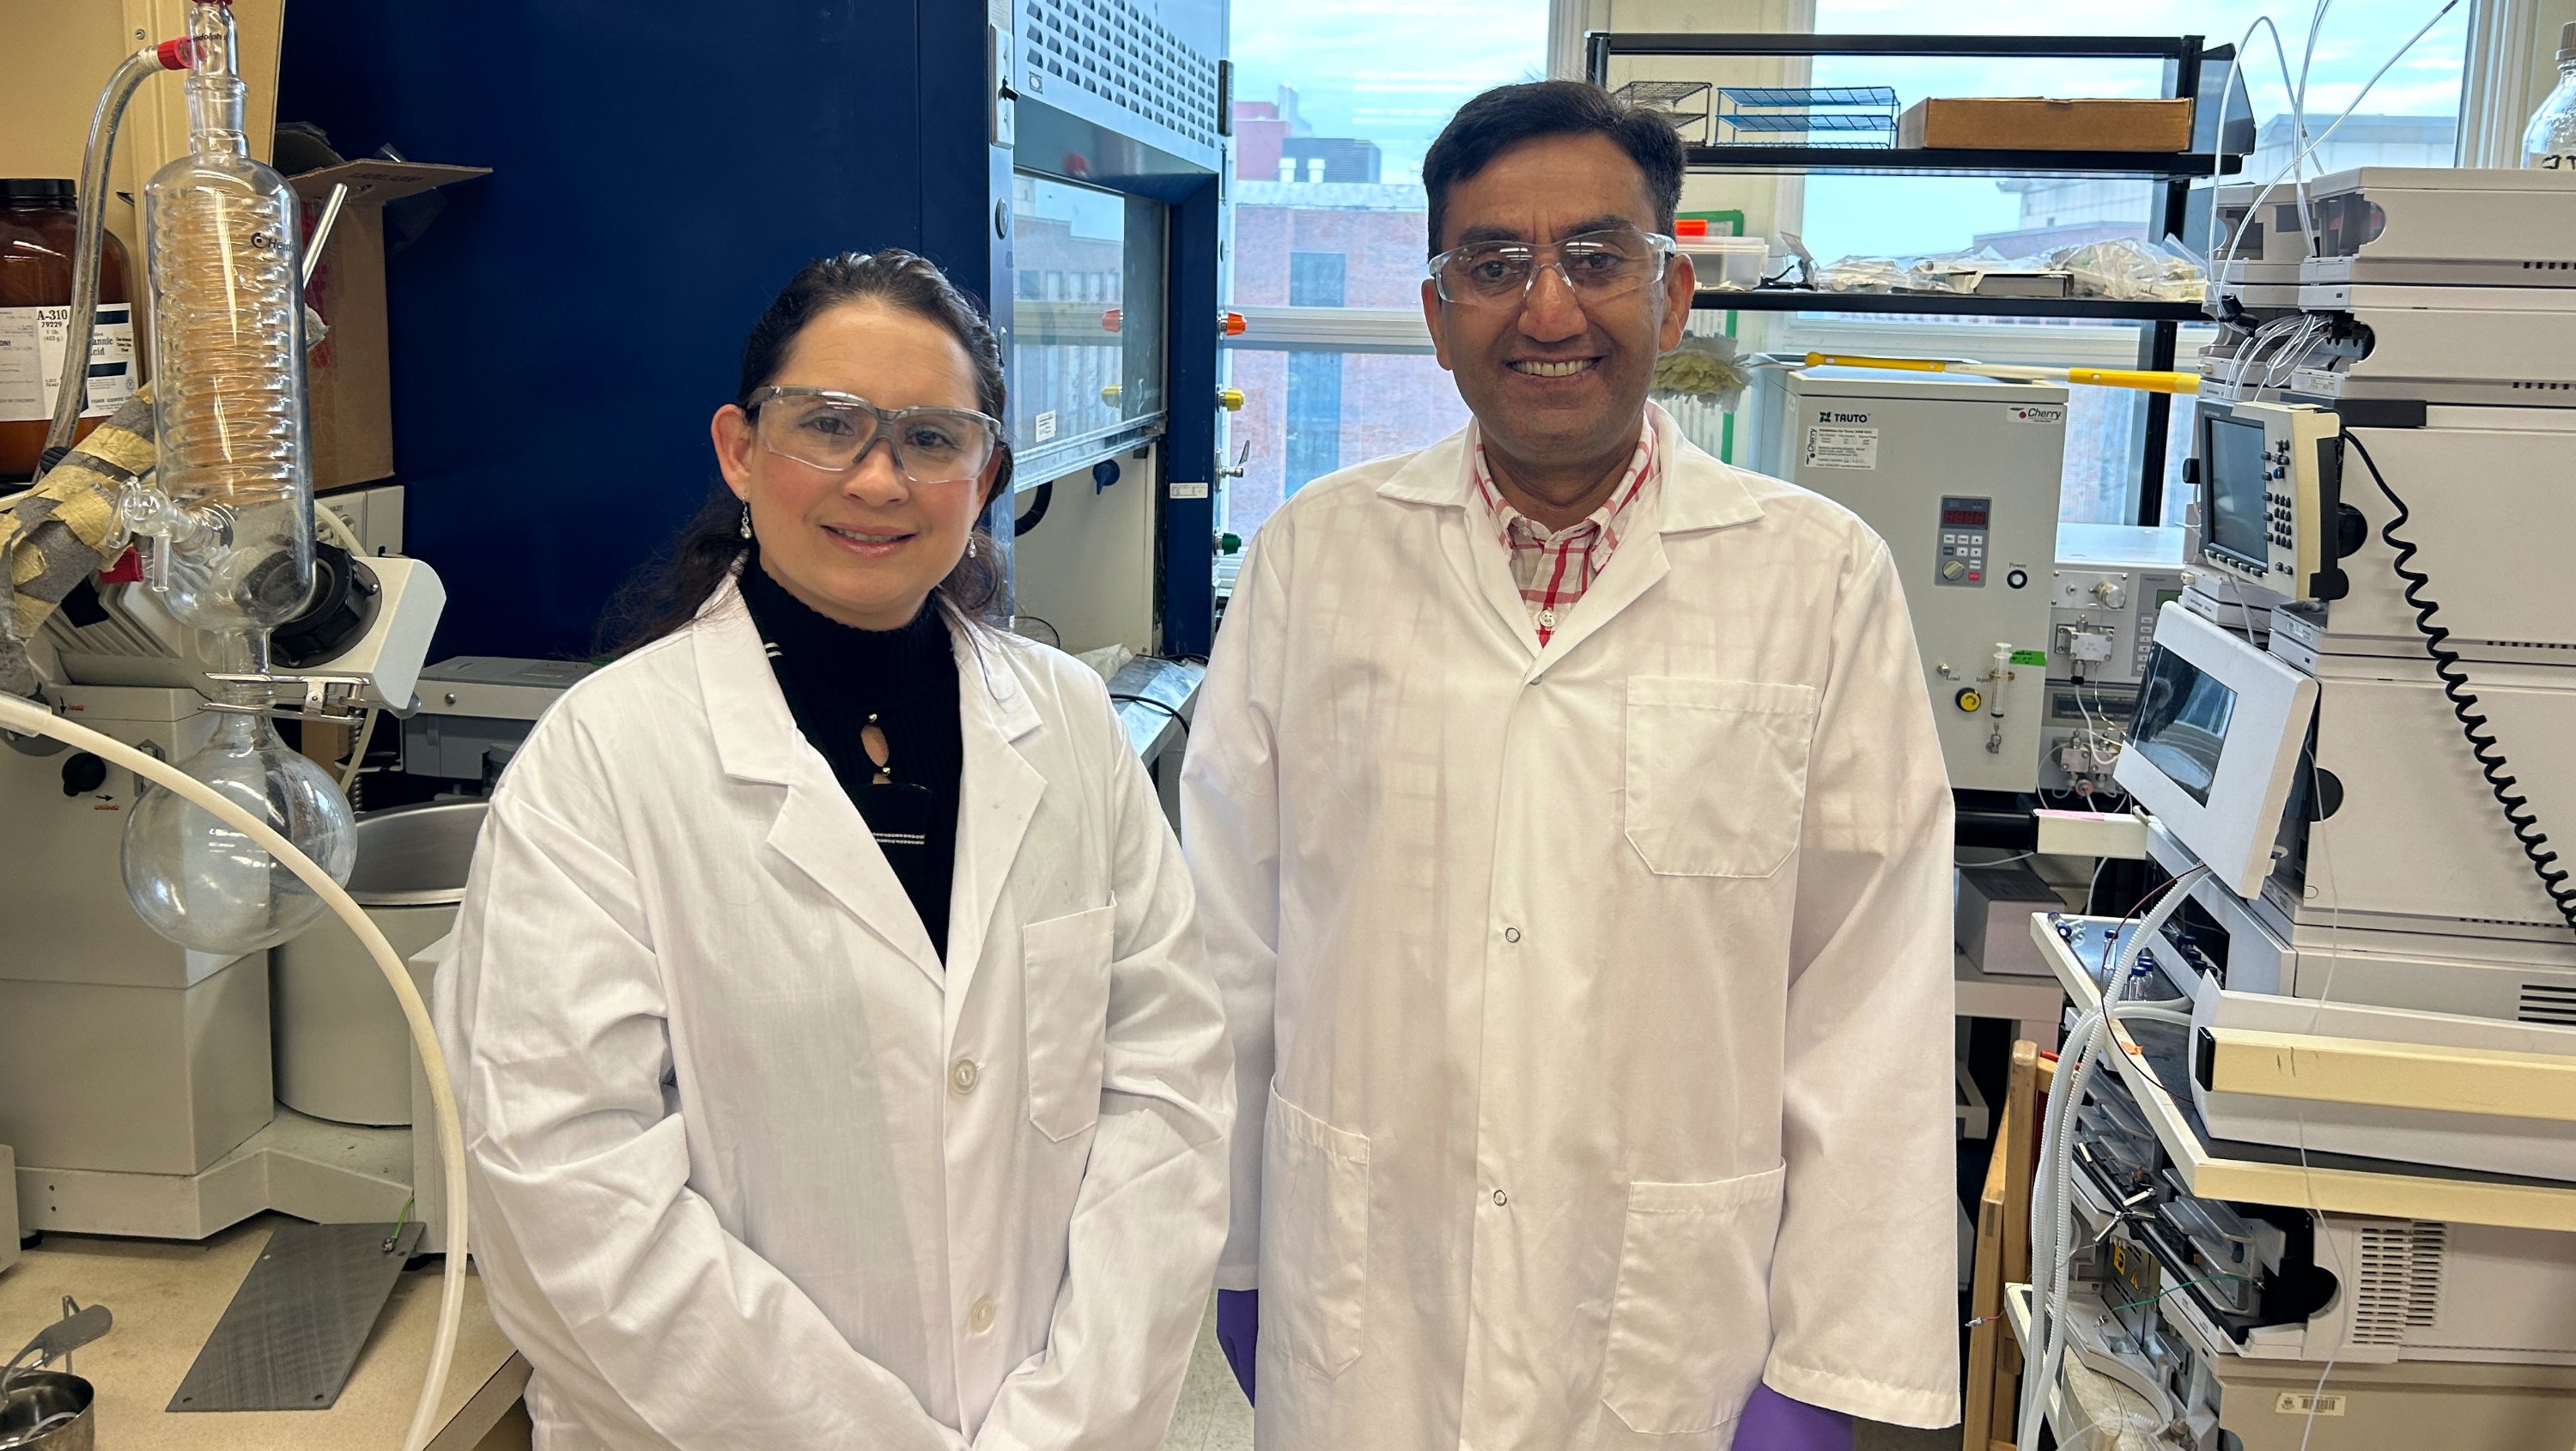 Yanet Rodriguez Herrero and Aman Ullah in the lab